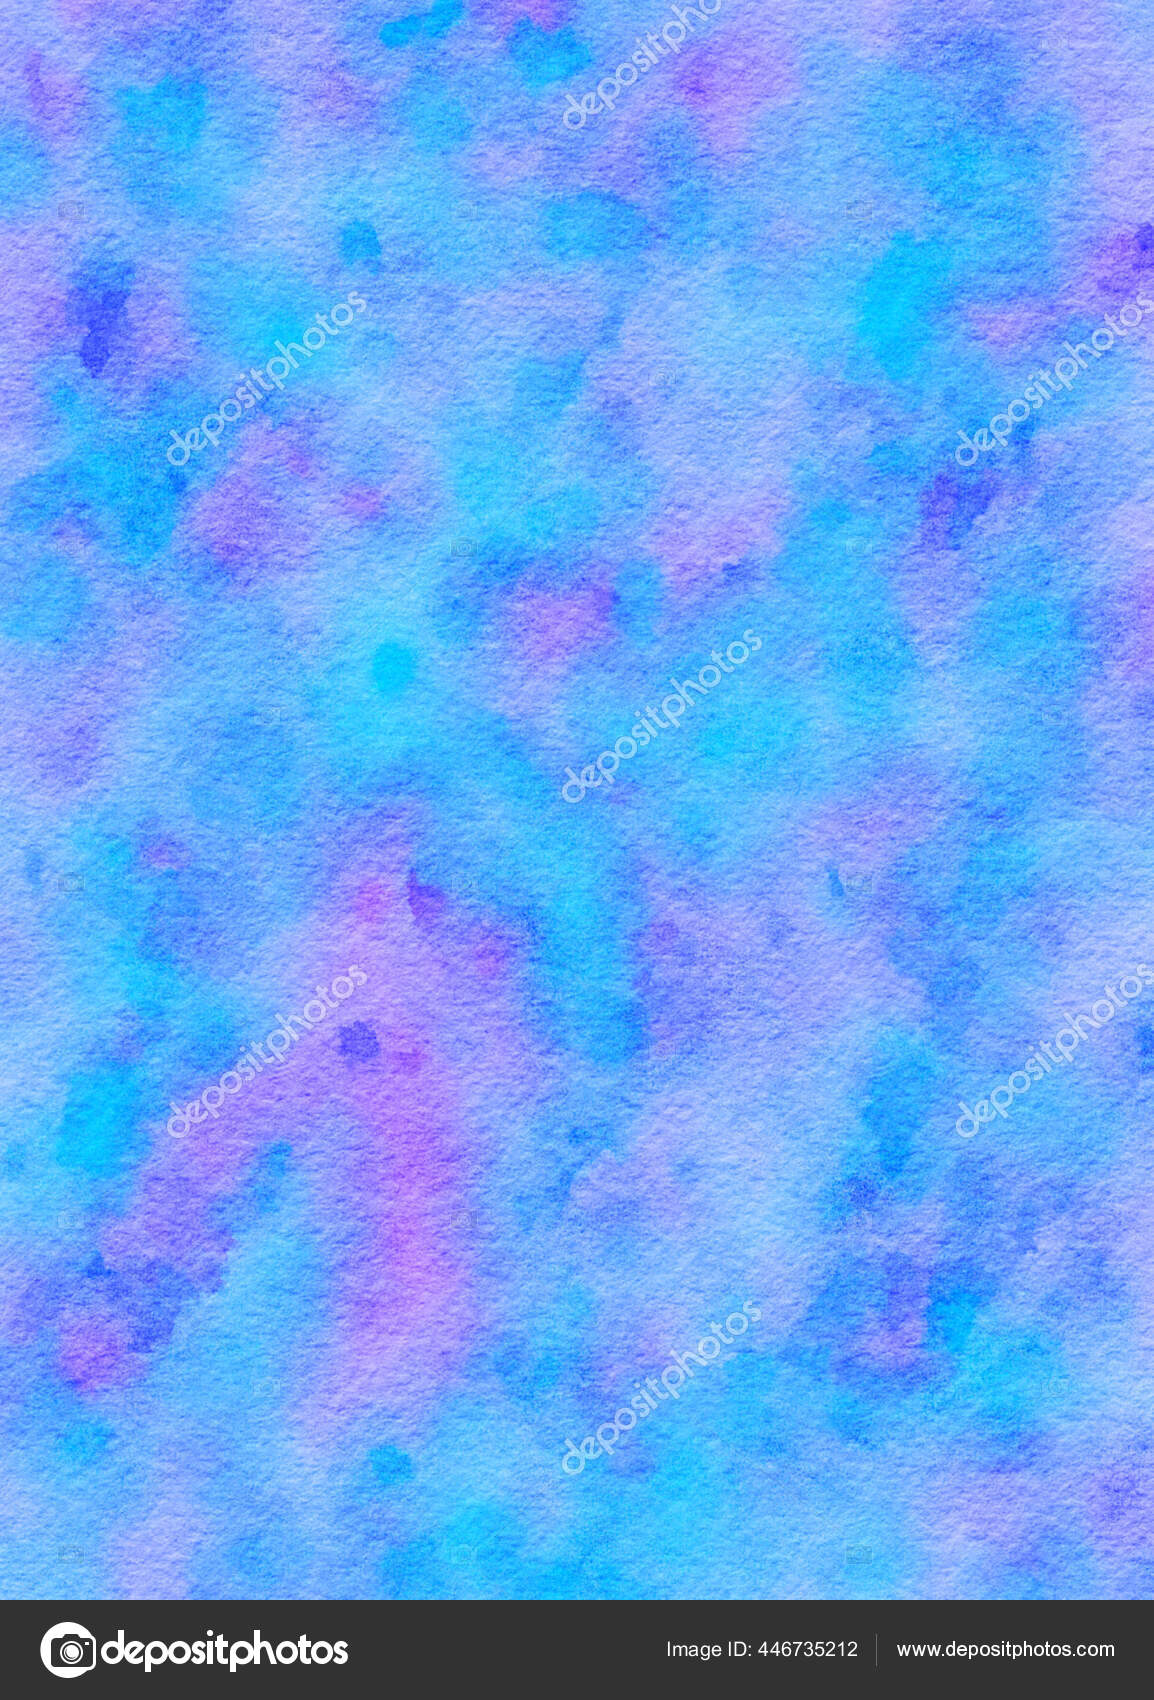 Hình nền giấy nước pastel xanh tím pha trộn kỹ thuật số với hoa văn nhuộm sẽ mang đến cho bạn những trải nghiệm trực quan tuyệt đẹp về sự phối hợp màu sắc độc đáo. Bức ảnh này chắc chắn sẽ làm cho màn hình của bạn trở nên đầy sức sống và tươi mới.